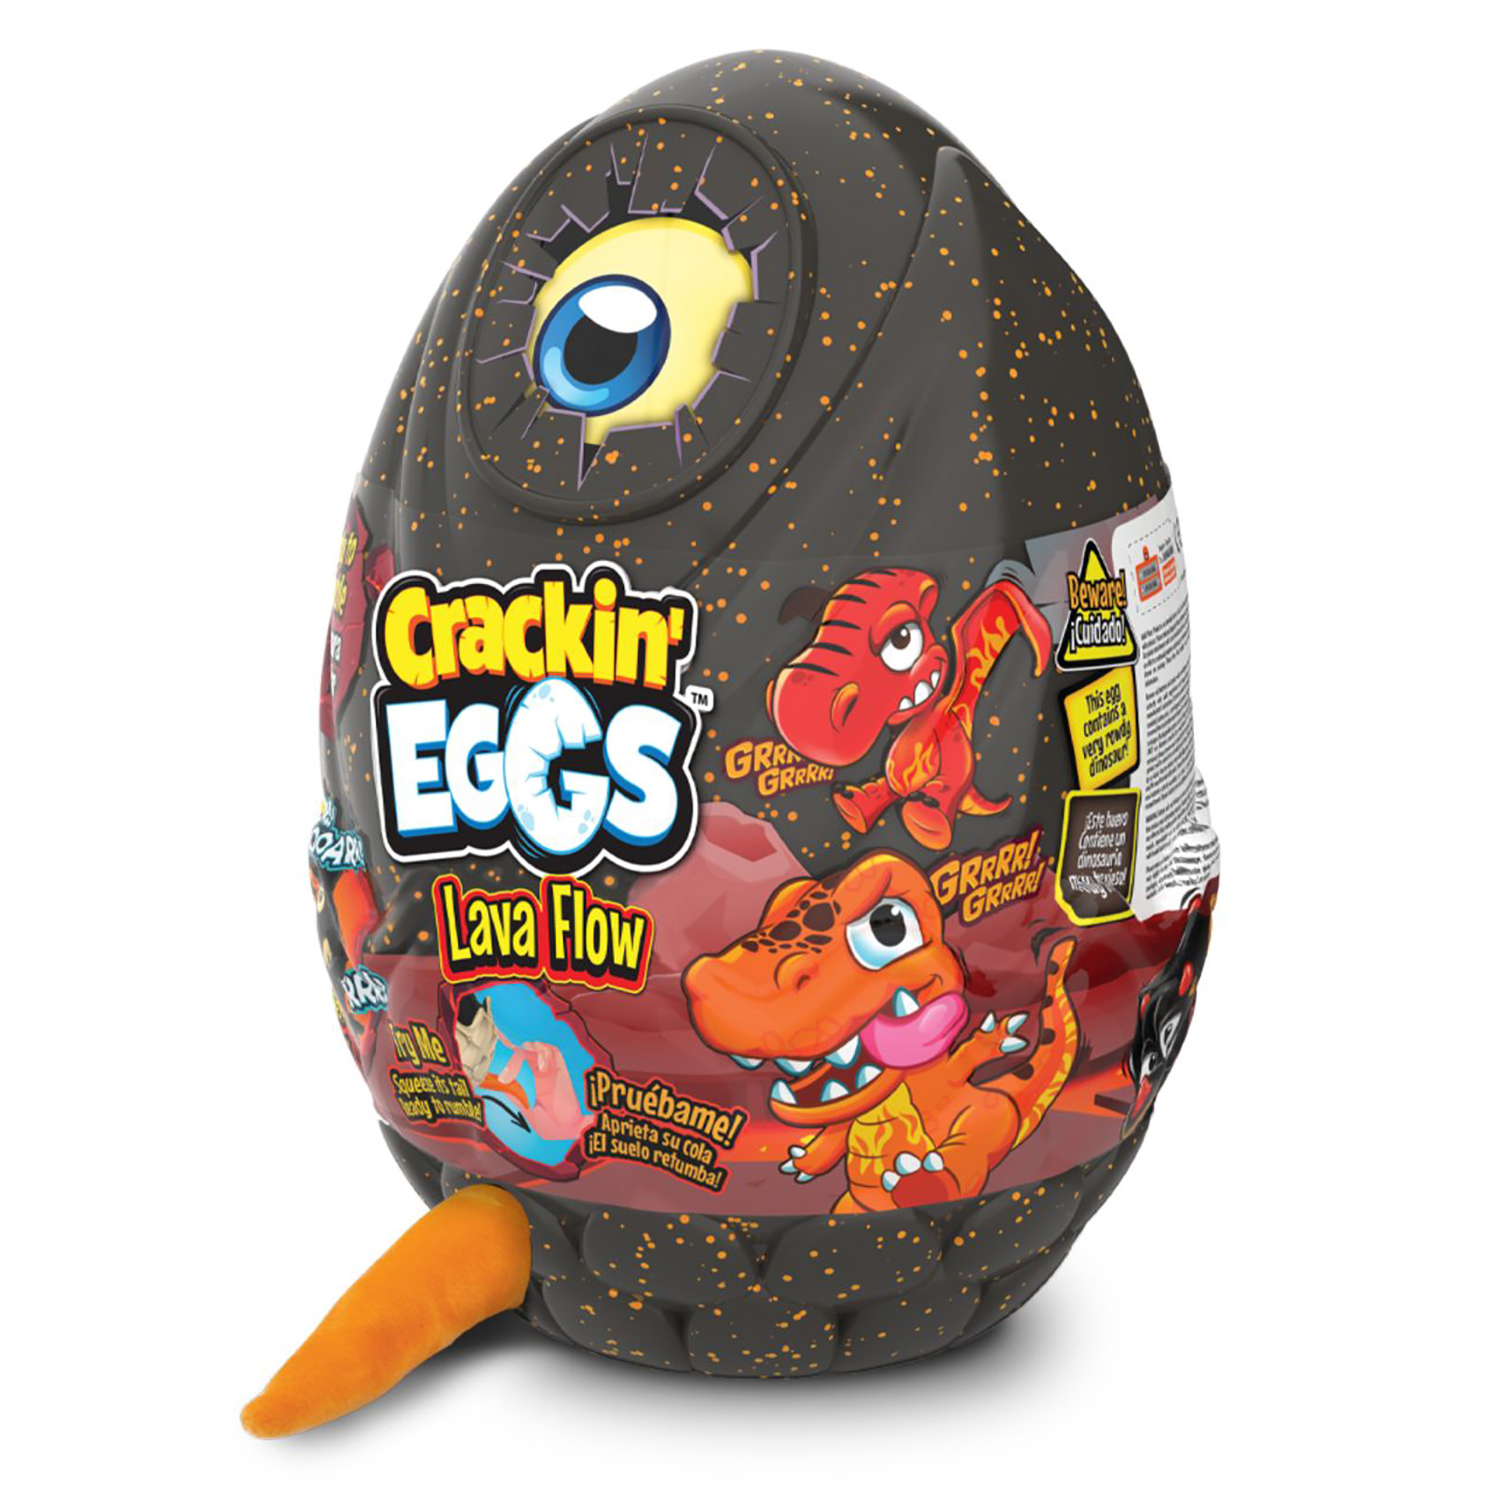 Мягкая игрушка Crackin' Eggs Динозавр оранжевый в яйце, серия Лава, 22 см игрушка rainbocorns bunnycorn яйцо в непрозрачной упаковке сюрприз 9280sq3